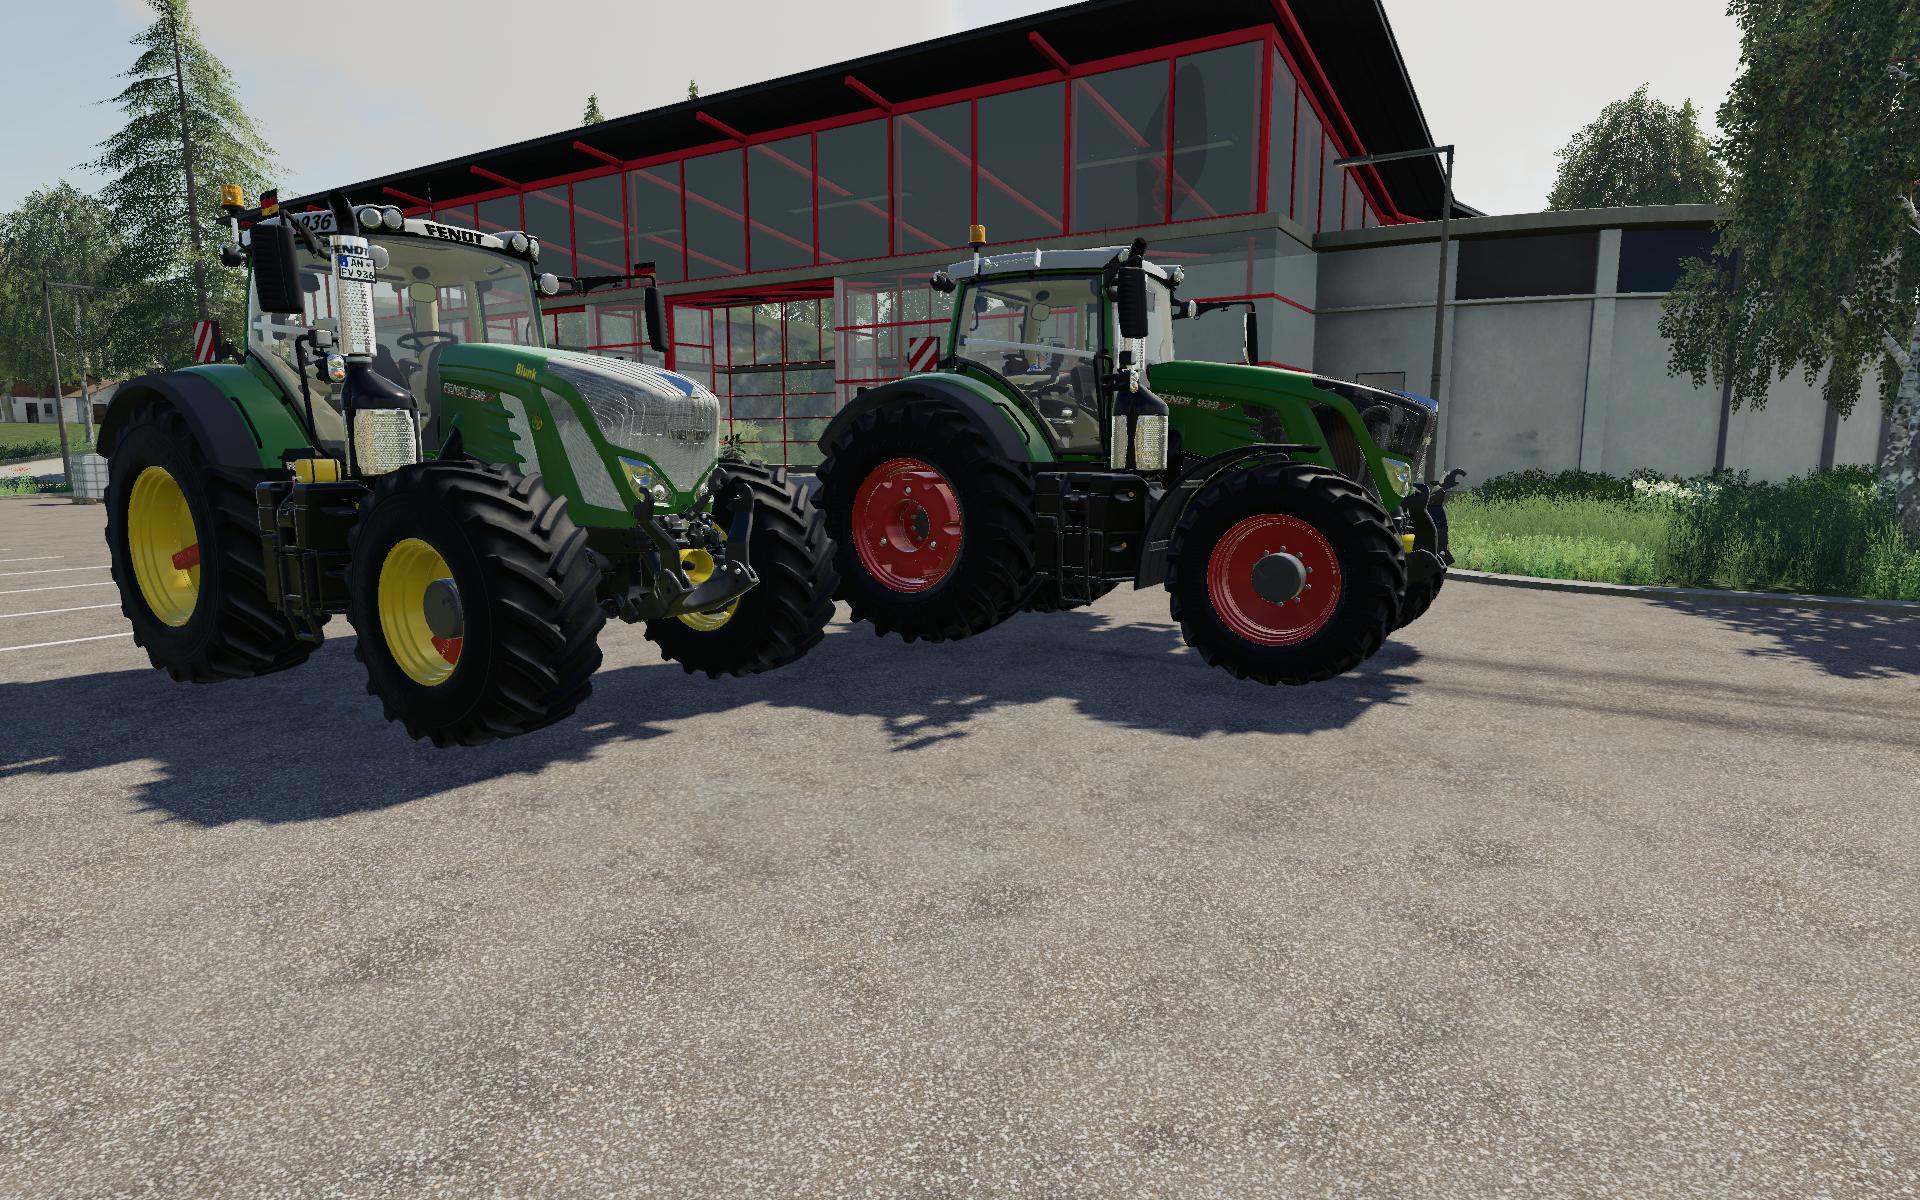 Fs19 Fendt Vario 900 S4 Tractor V10 Farming Simulator 19 Modsclub 8431